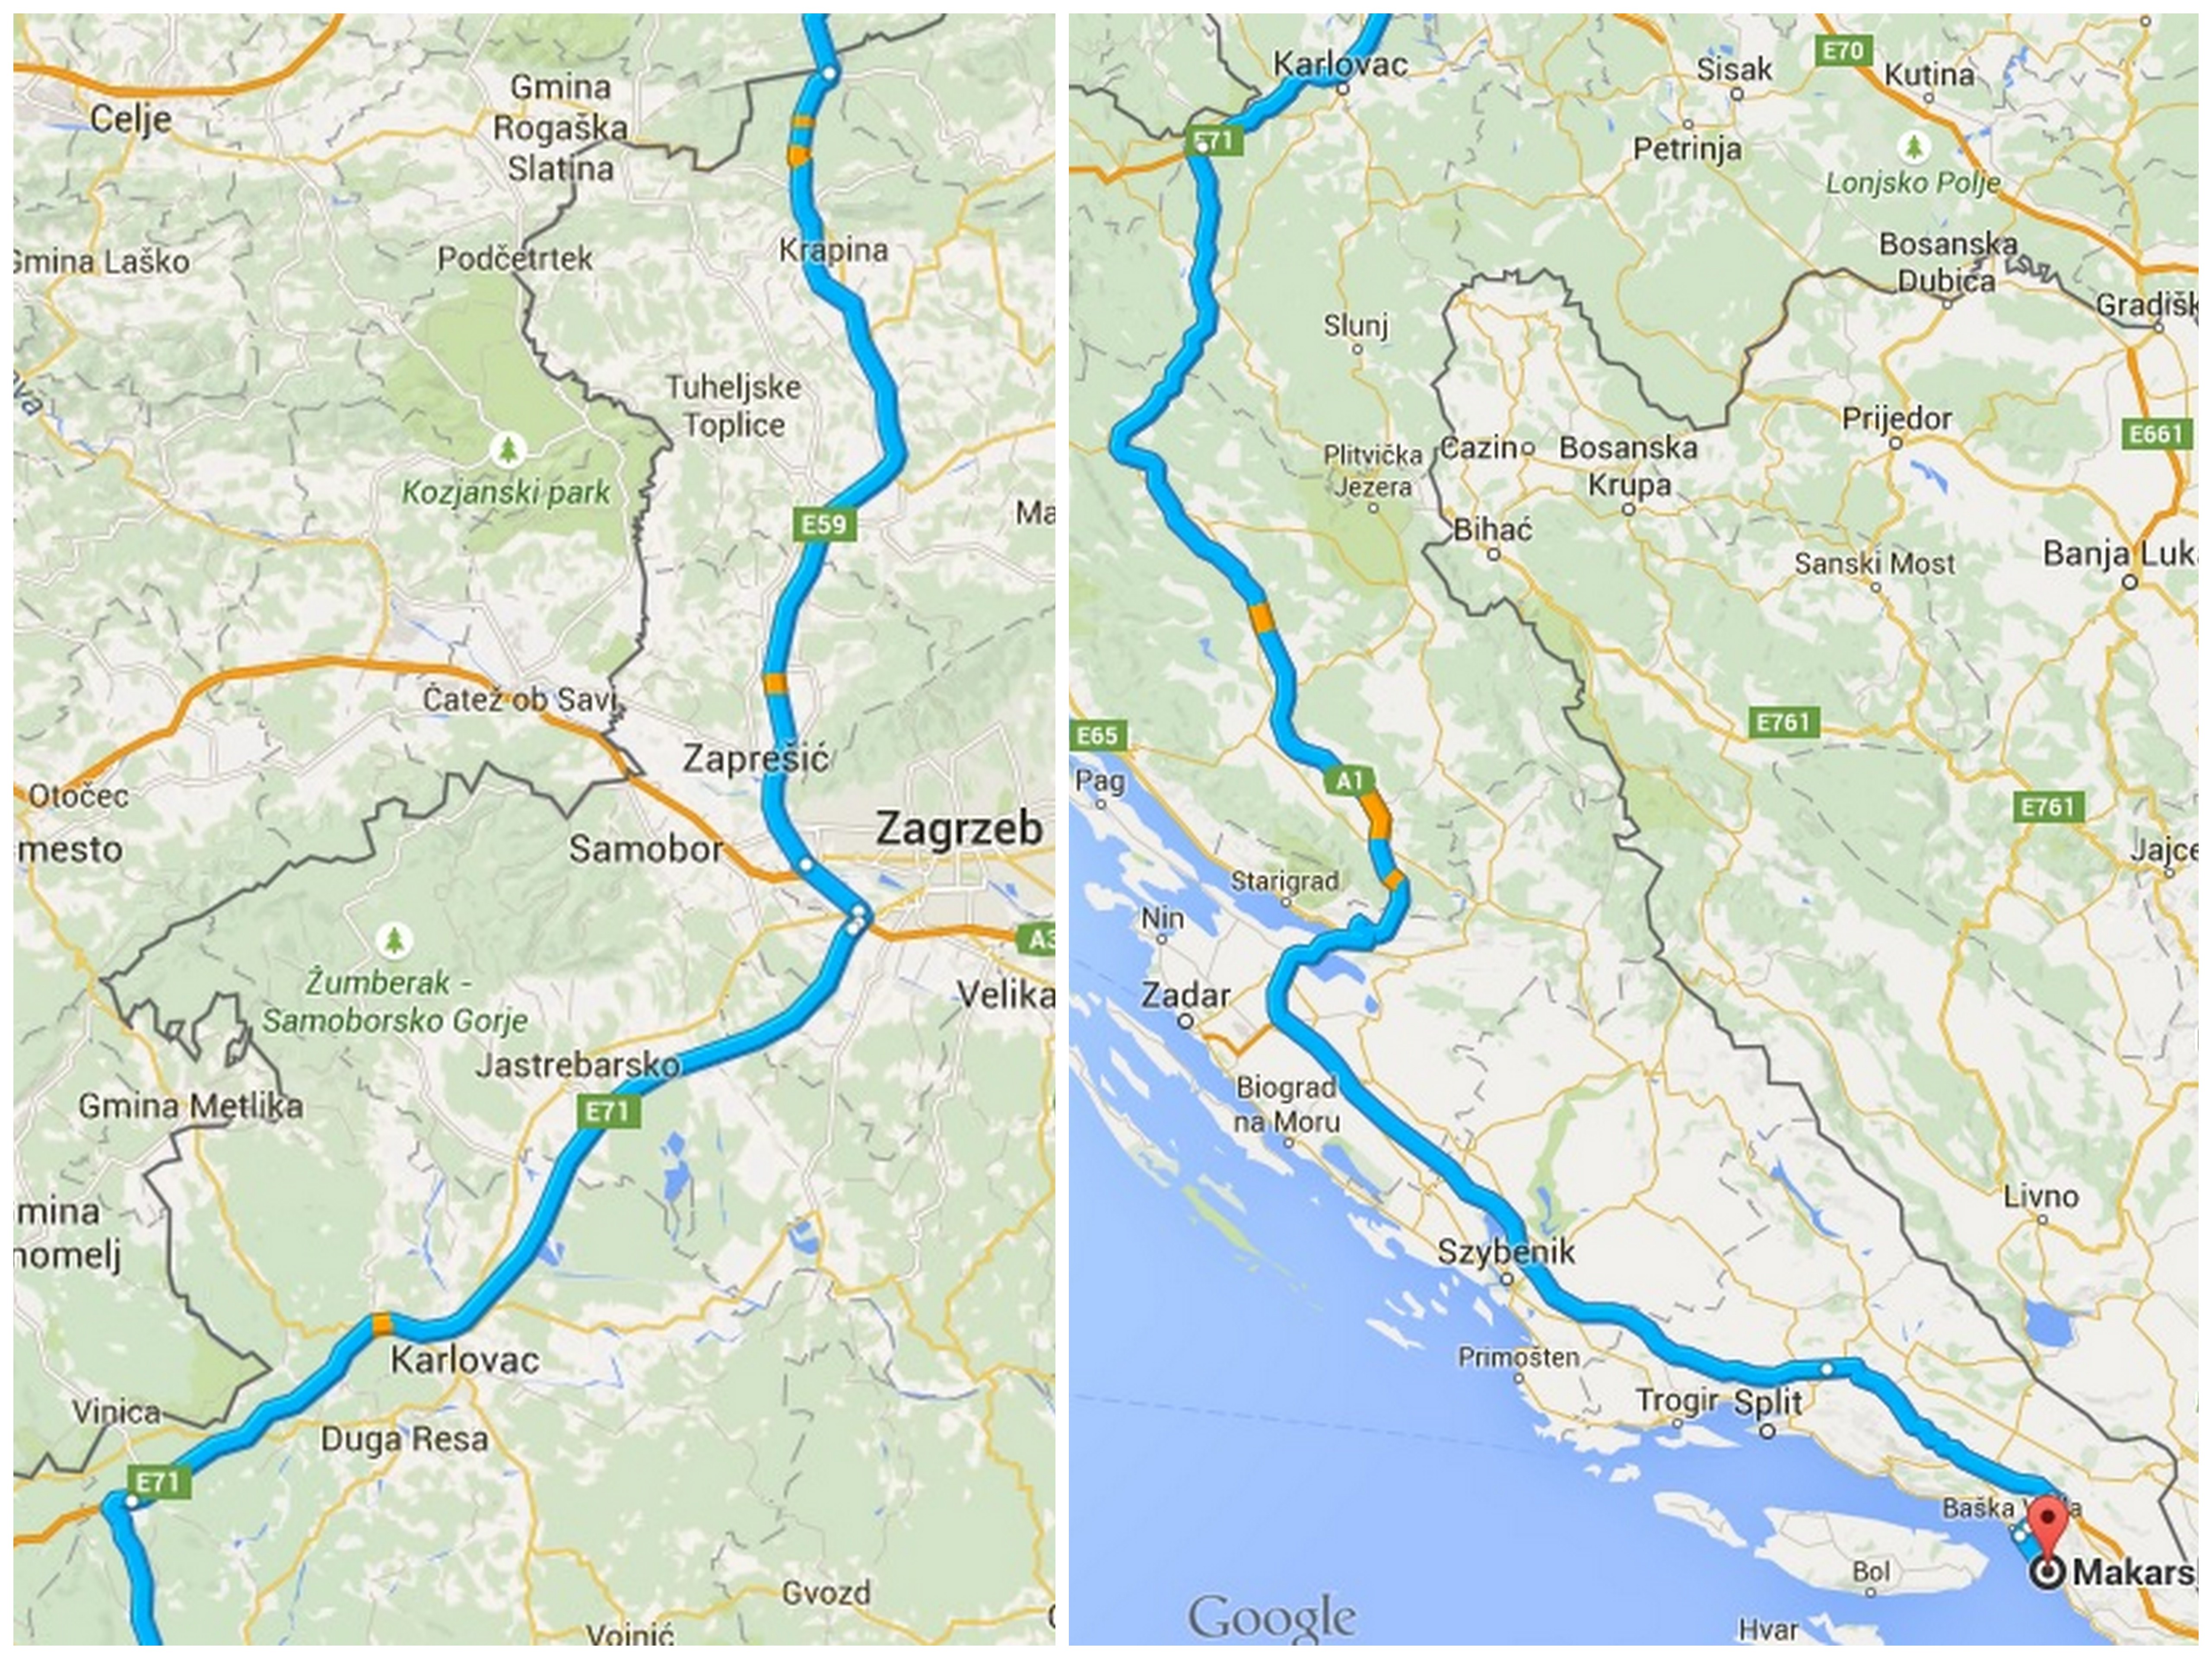 Dojazd samochodem do Chorwacji: Gorniji Macelj - Makarska